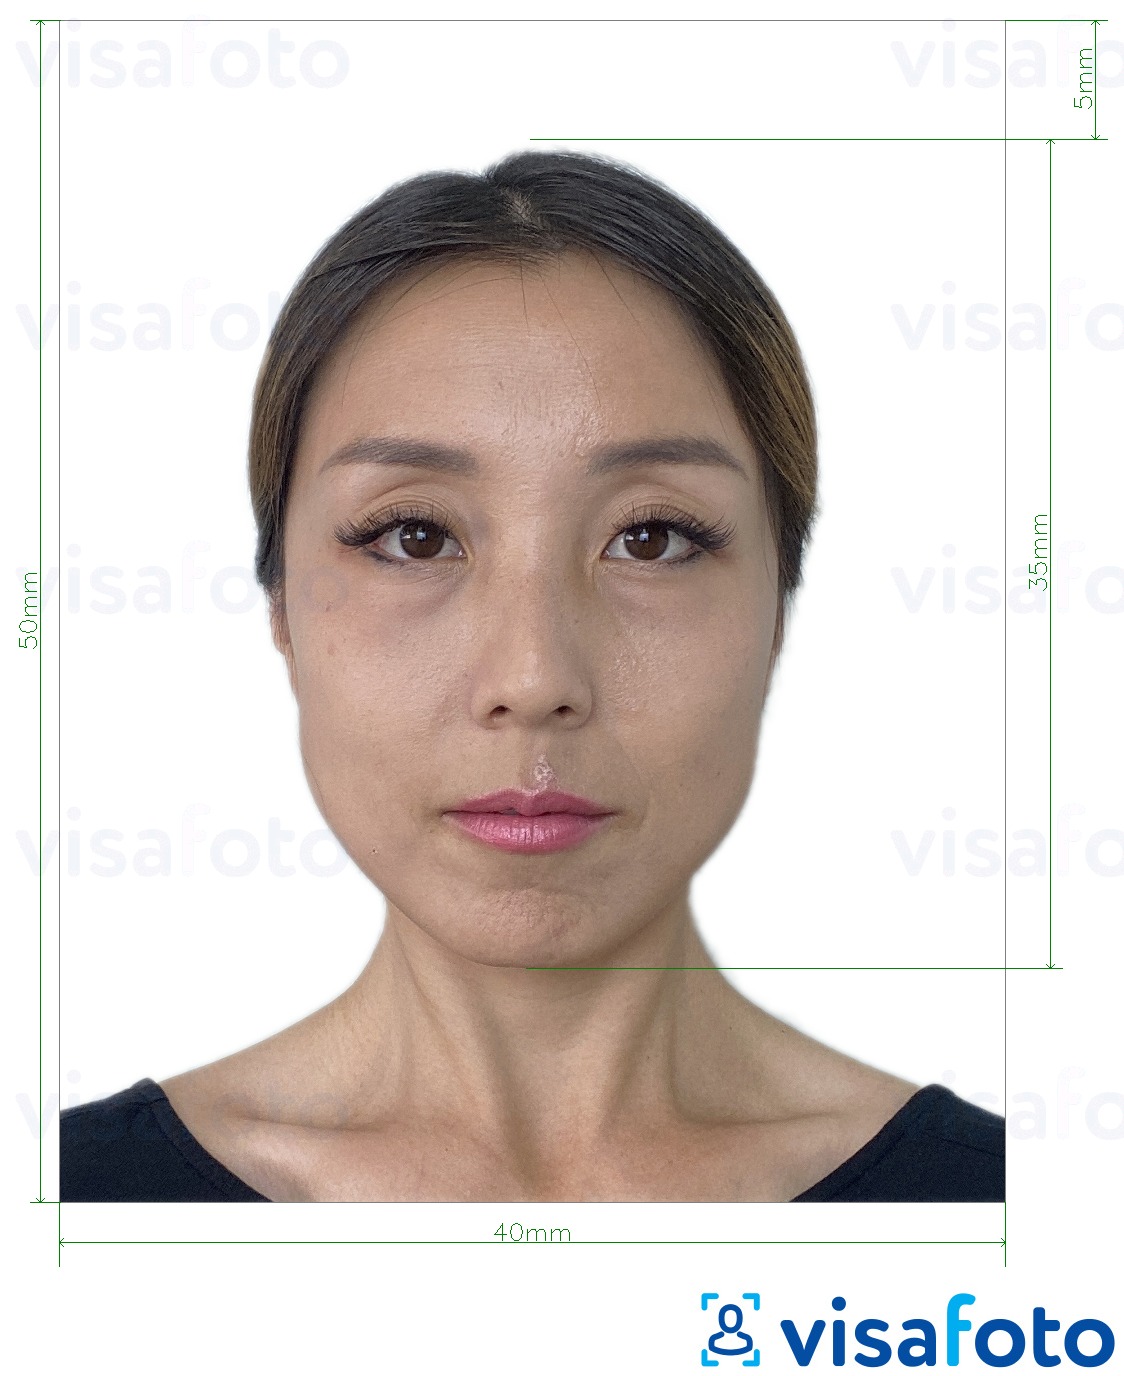 Пример за снимка за Хонконгски паспорт 40x50 мм (4x5 см) с точна спецификация за размер